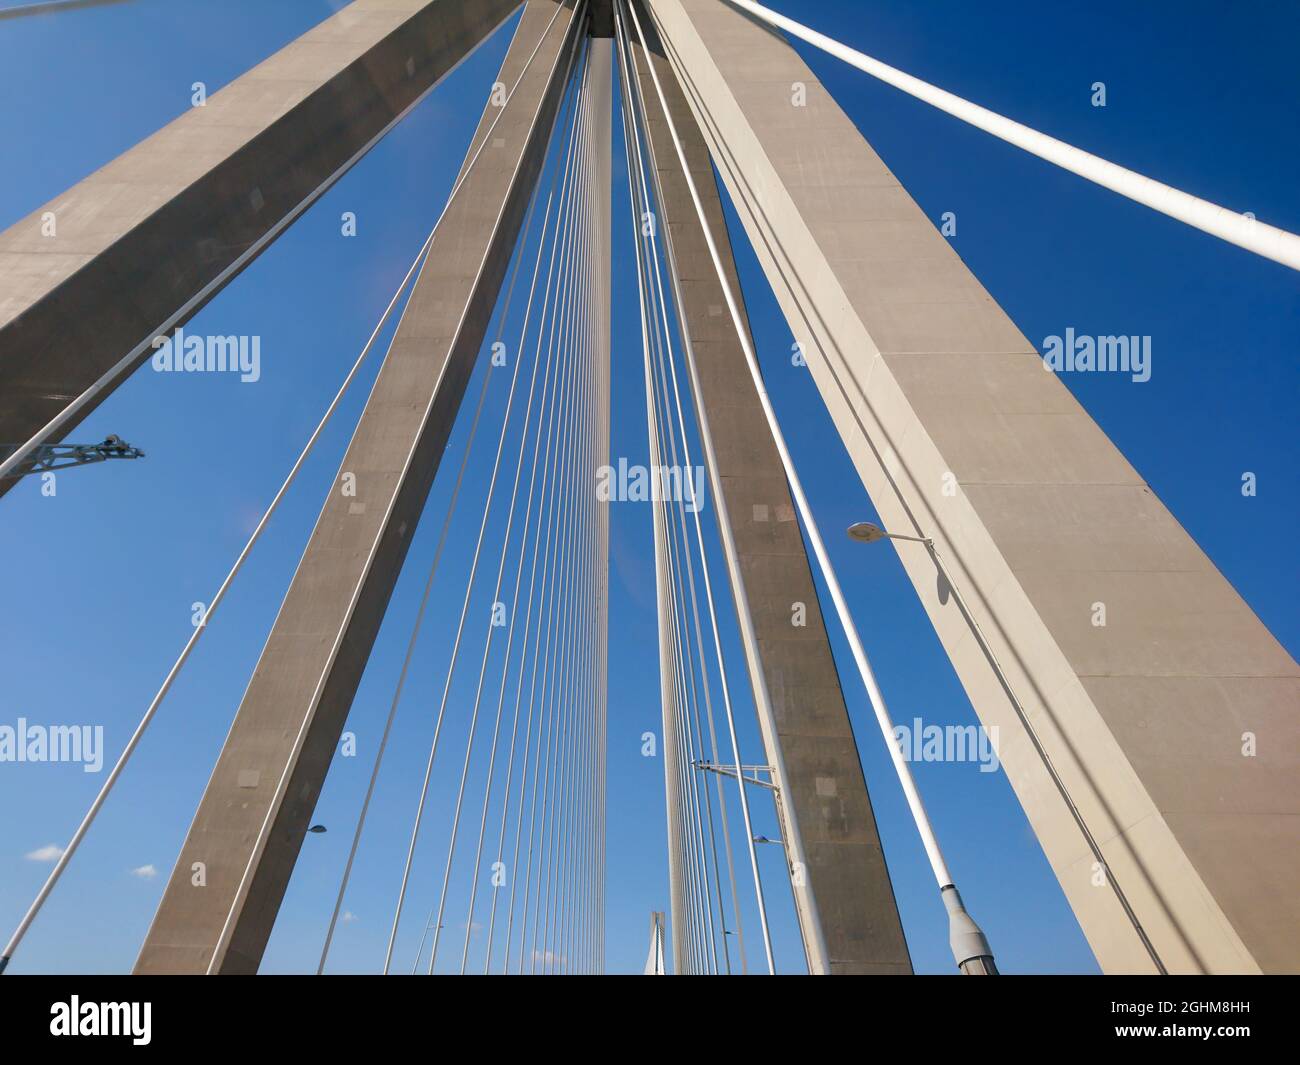 Rion-Antirion Brücke Bau Stahlturm mit Drähten auf Autobahn Straße, Griechenland. Suspension, die zweitlängste Seilbrücke auf sonnigem, landschaftlich schönem Blau Stockfoto